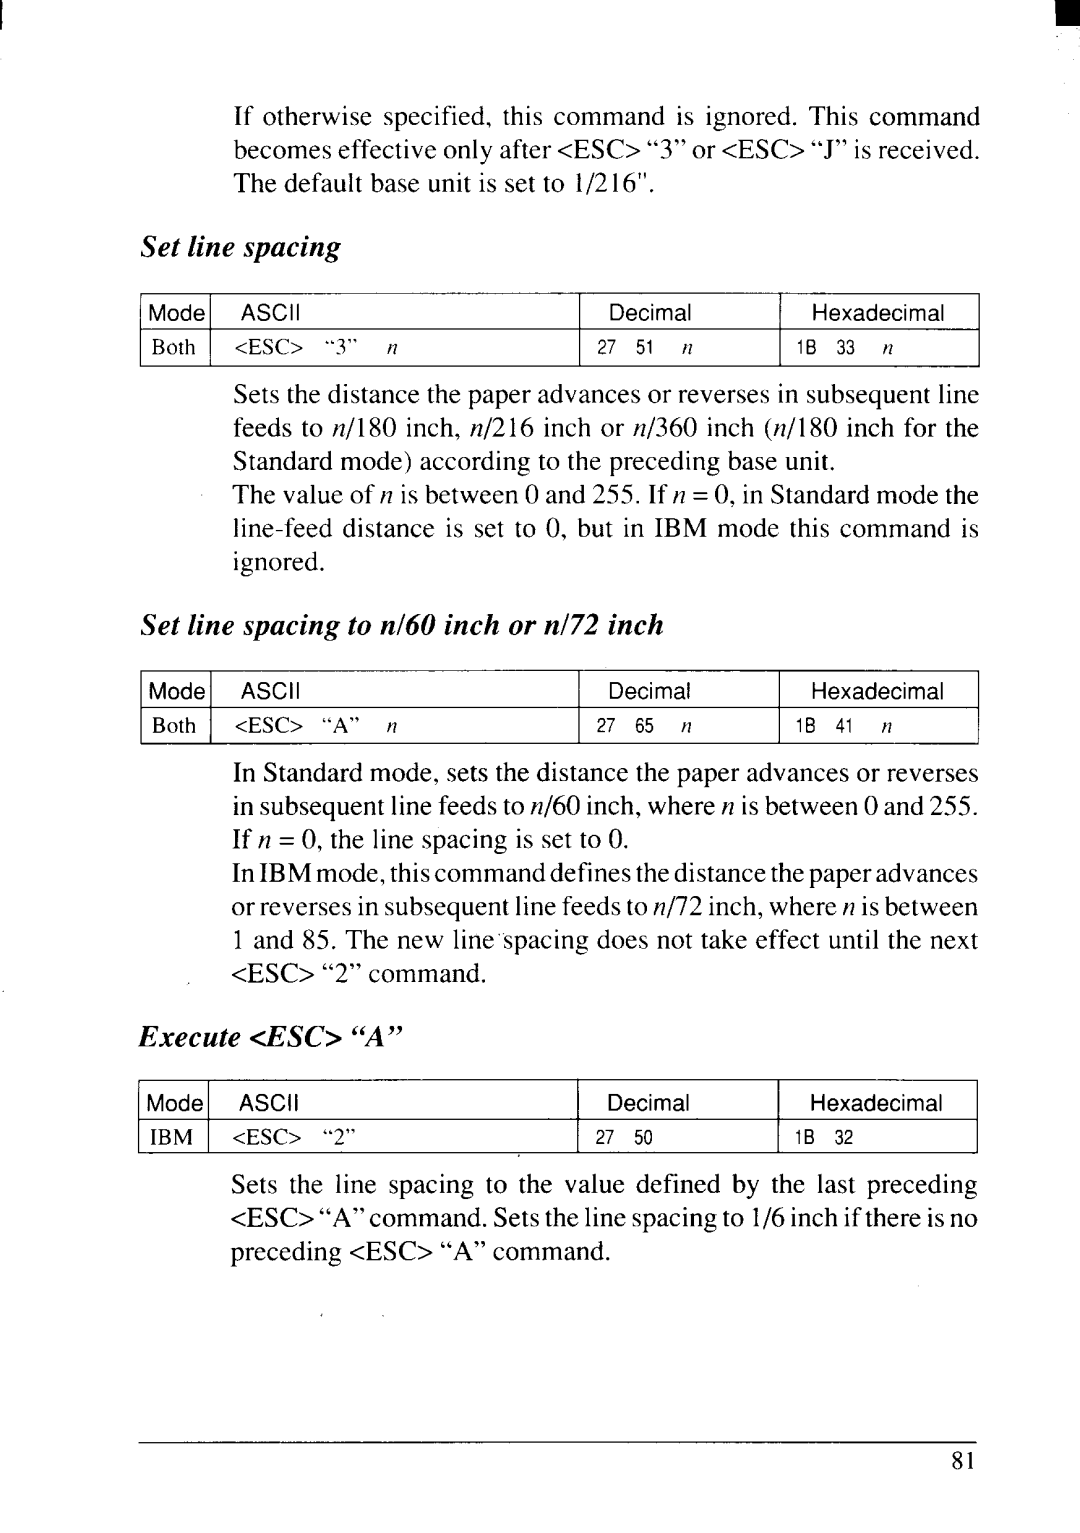 Star Micronics NX-2415II user manual Set line spacing to n160inch or n172inch, Execute dlSC “A”, 27 65 n 